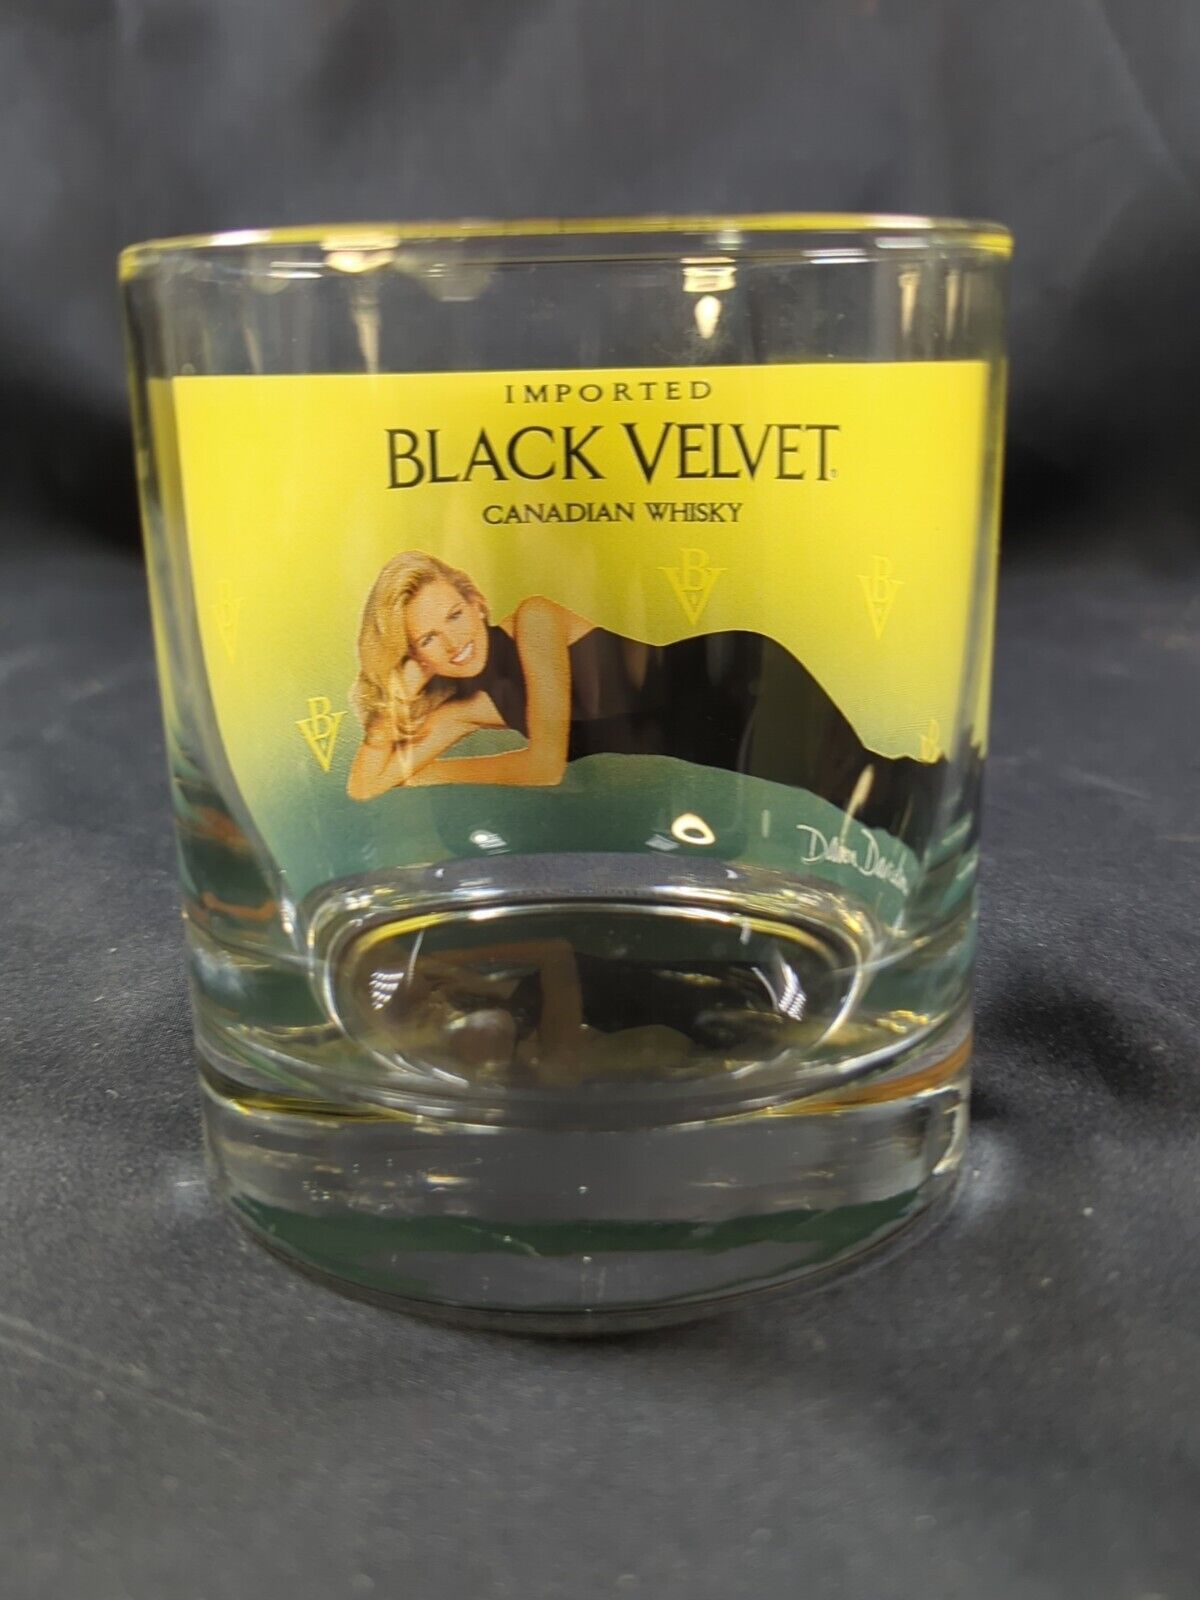 Vintage Black Velvet Imported Canadian Whisky Glass W Woman Dawn Davidson Unique